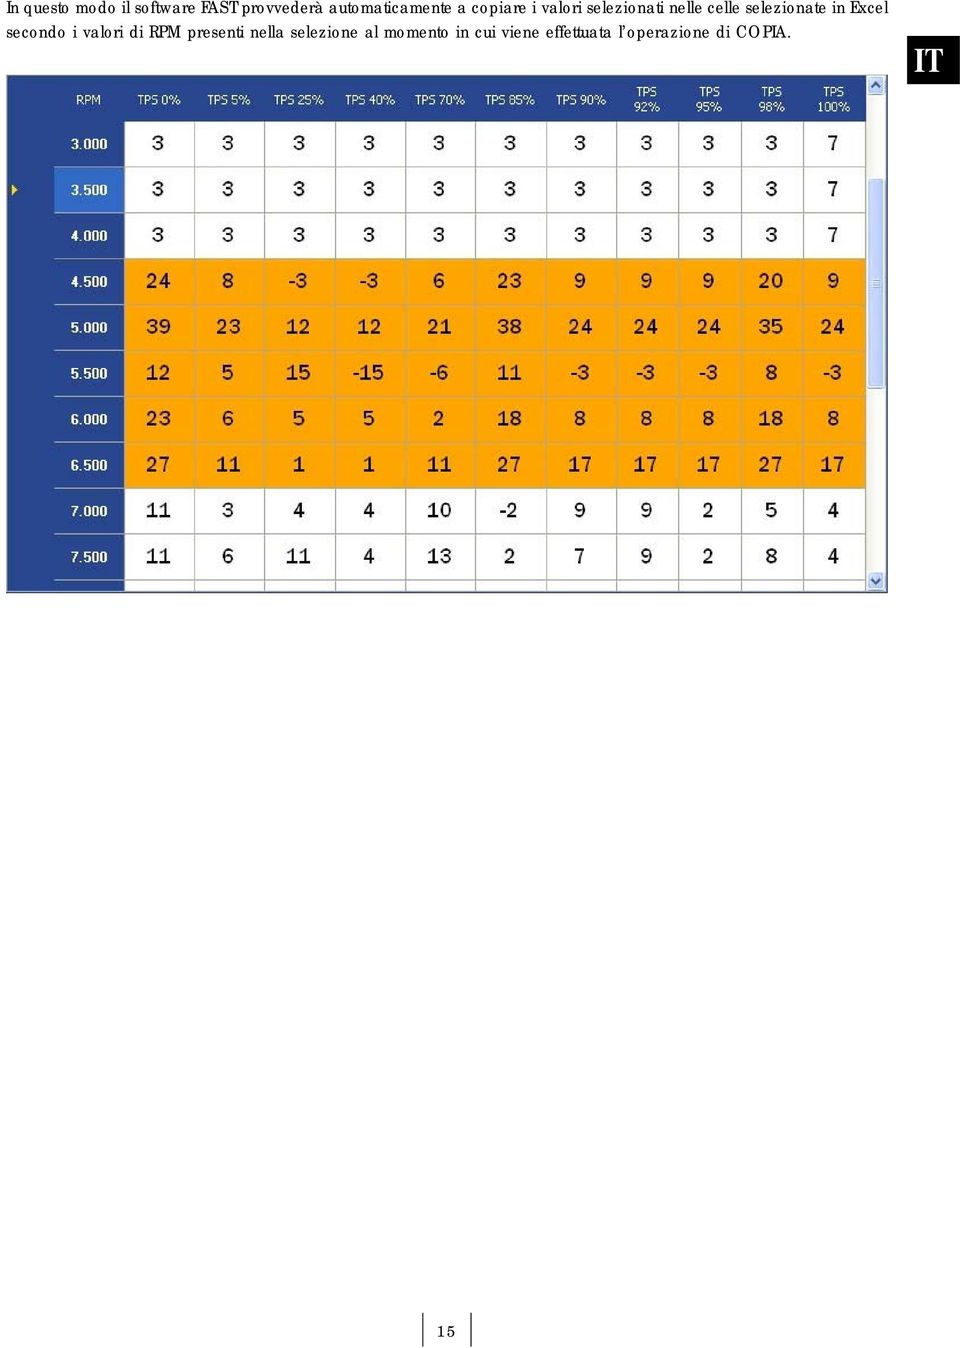 celle selezionate in Excel secondo i valori di RPM